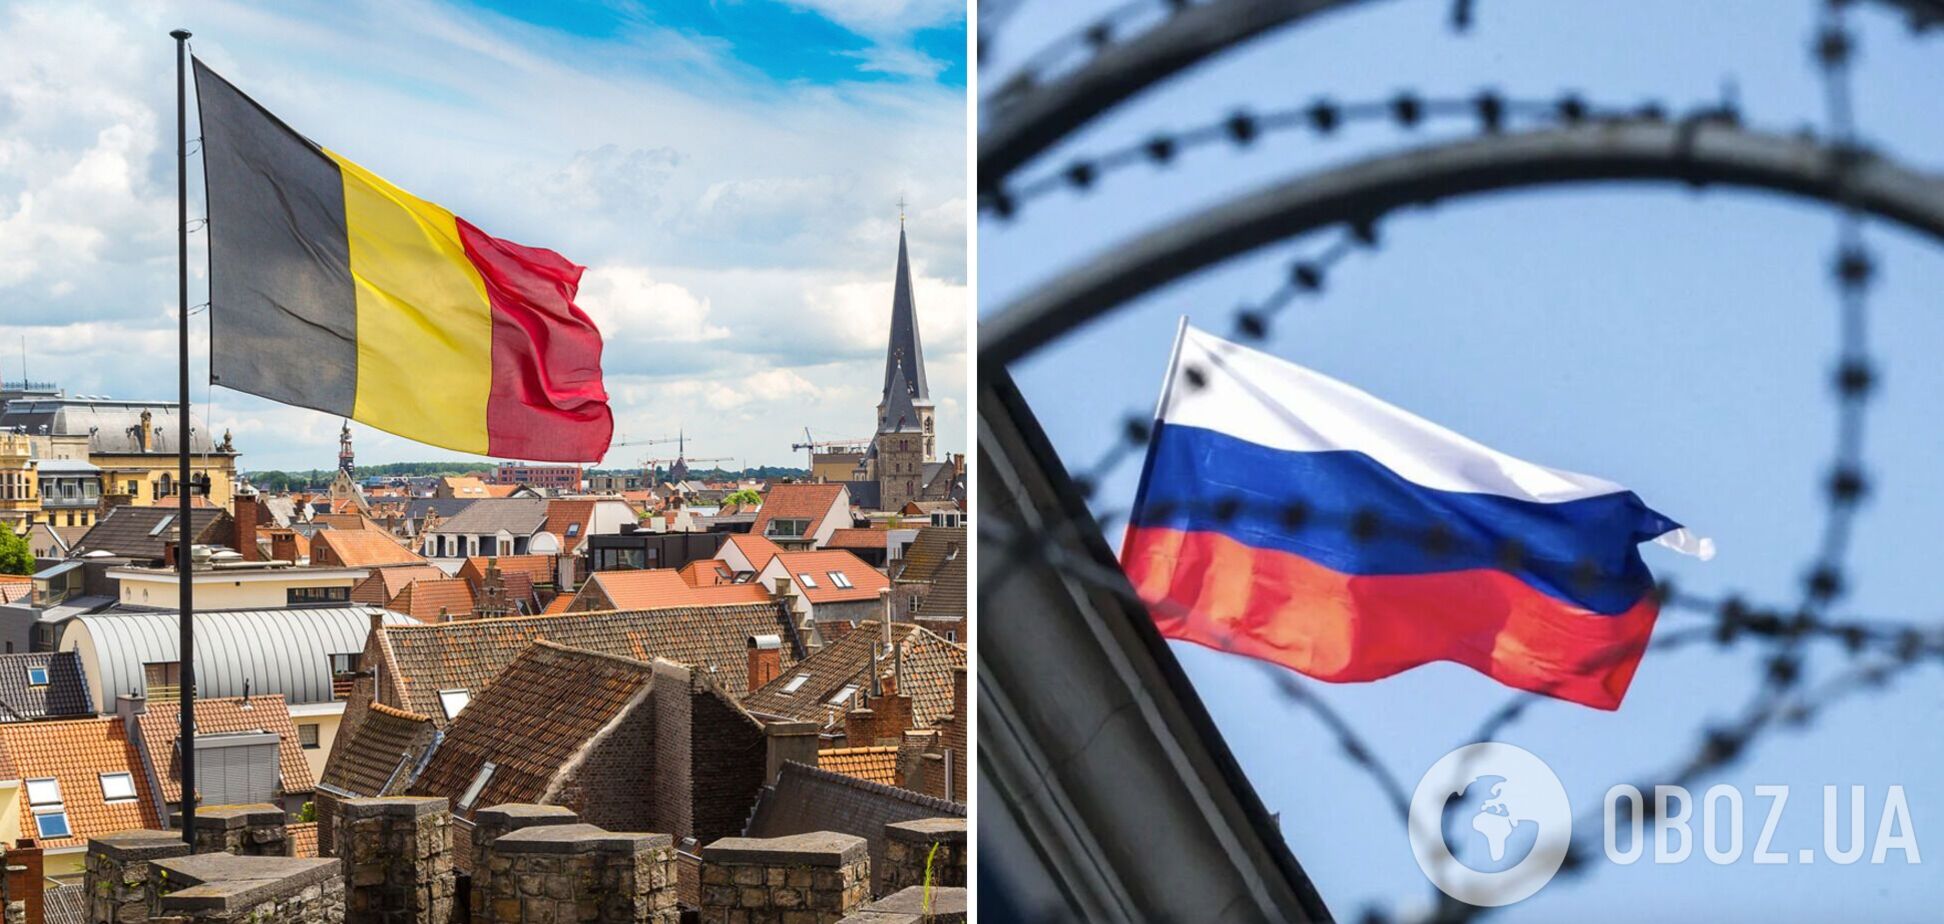 Бельгия заморозила крупнейшую в ЕС сумму российских активов – €58 млрд